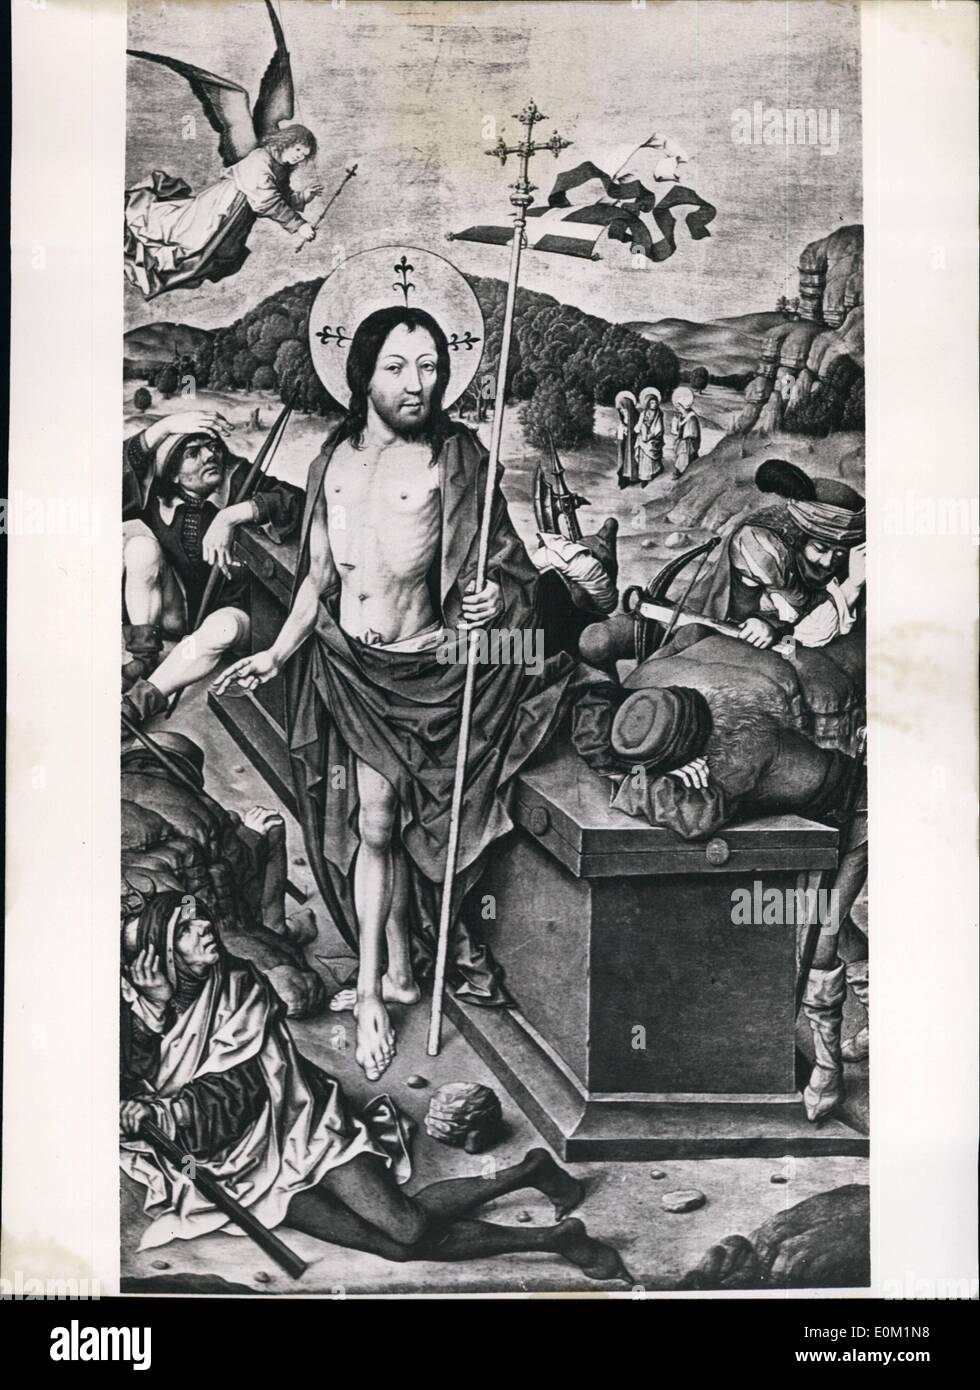 Mar 03, 1953 - Pasqua immagine decorativa: Foto mostra una riproduzione grafica da un artista sconosciuto da Dürer del dipinto della resurrezione di Cristo. Foto Stock